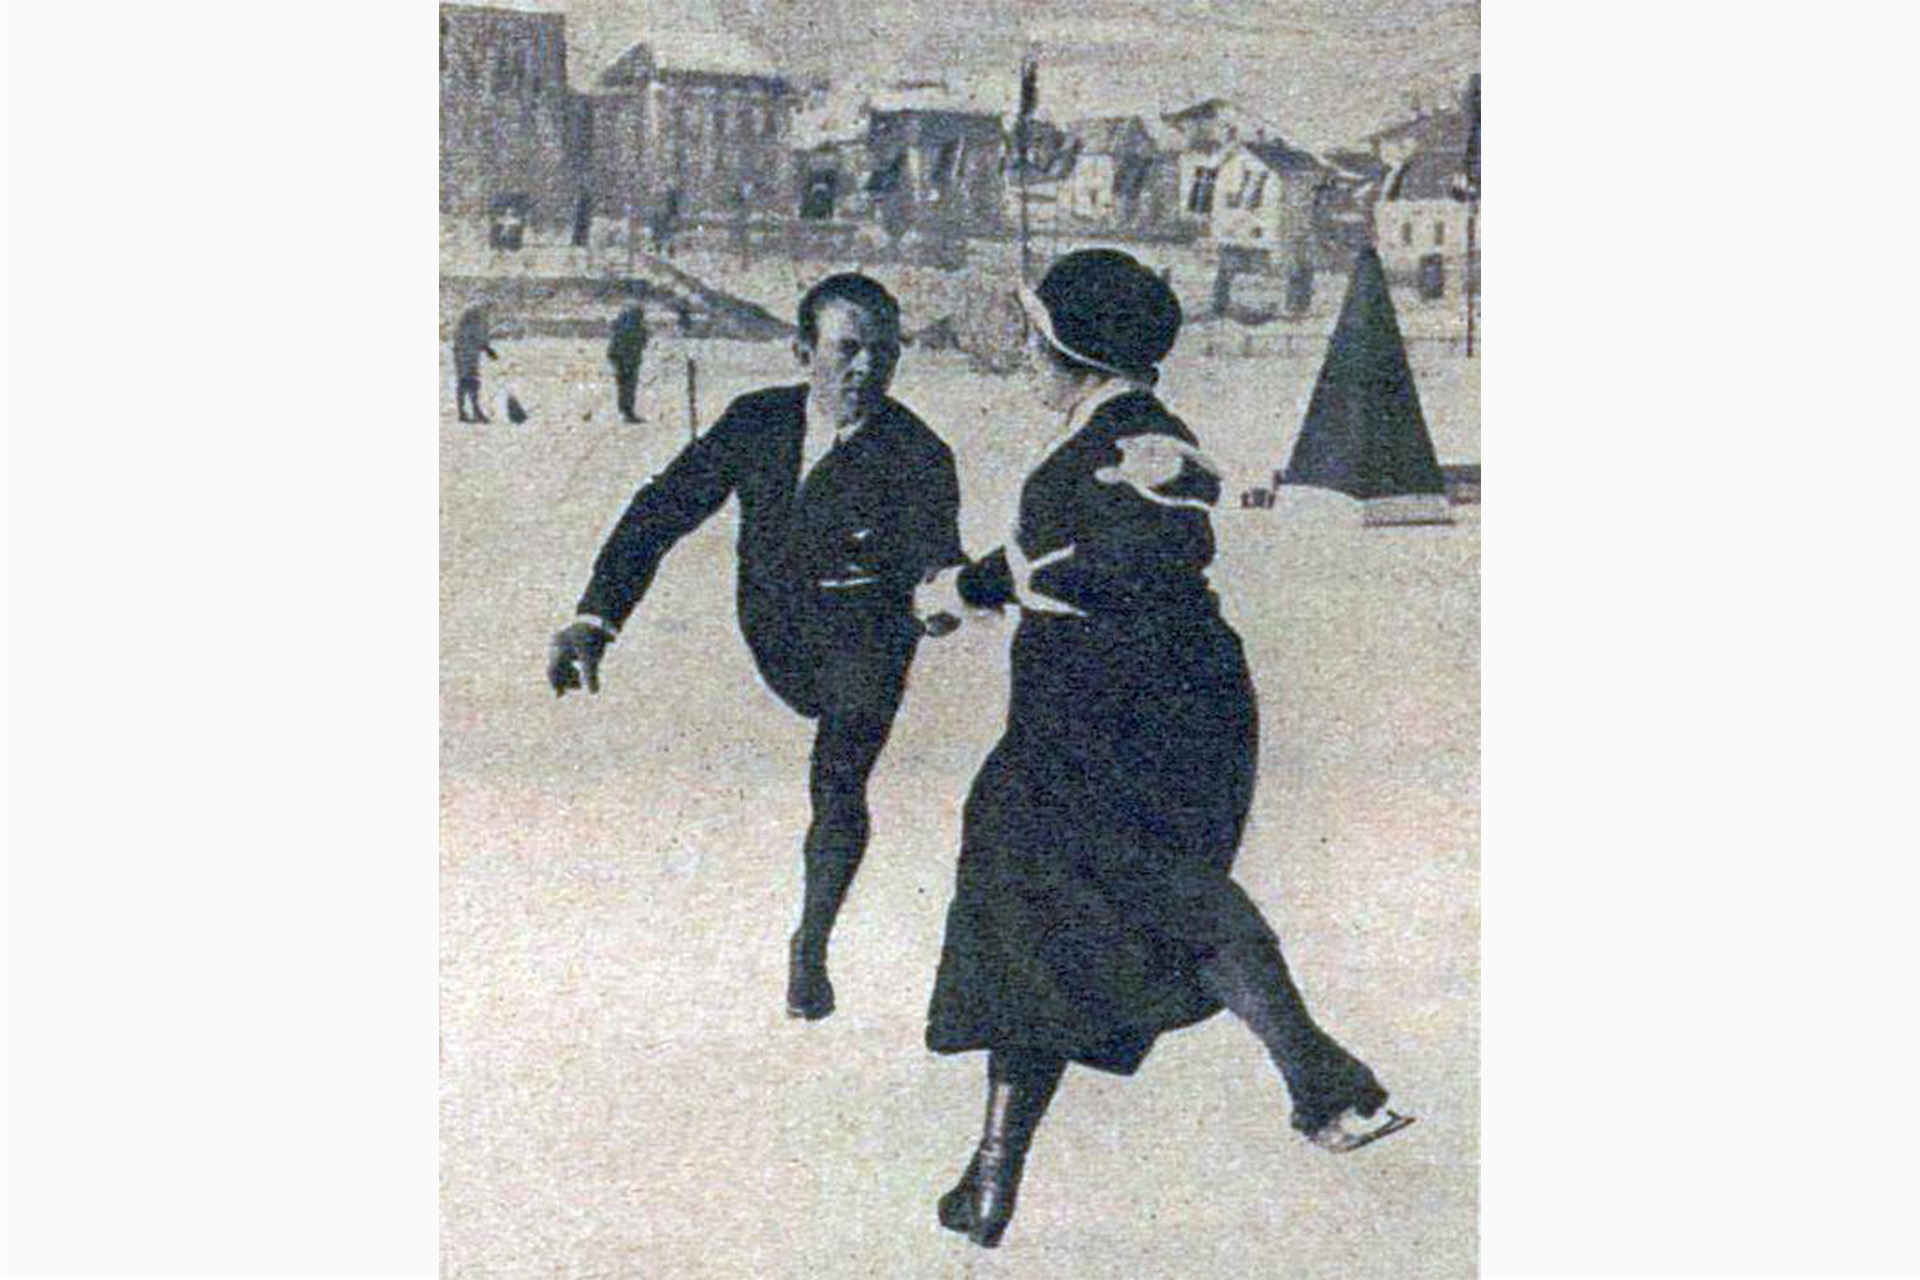 Альфред Бергер и Хелене Энгельман, австрийские фигуристы, завоевавшие золото на Олимпиаде 1924 года